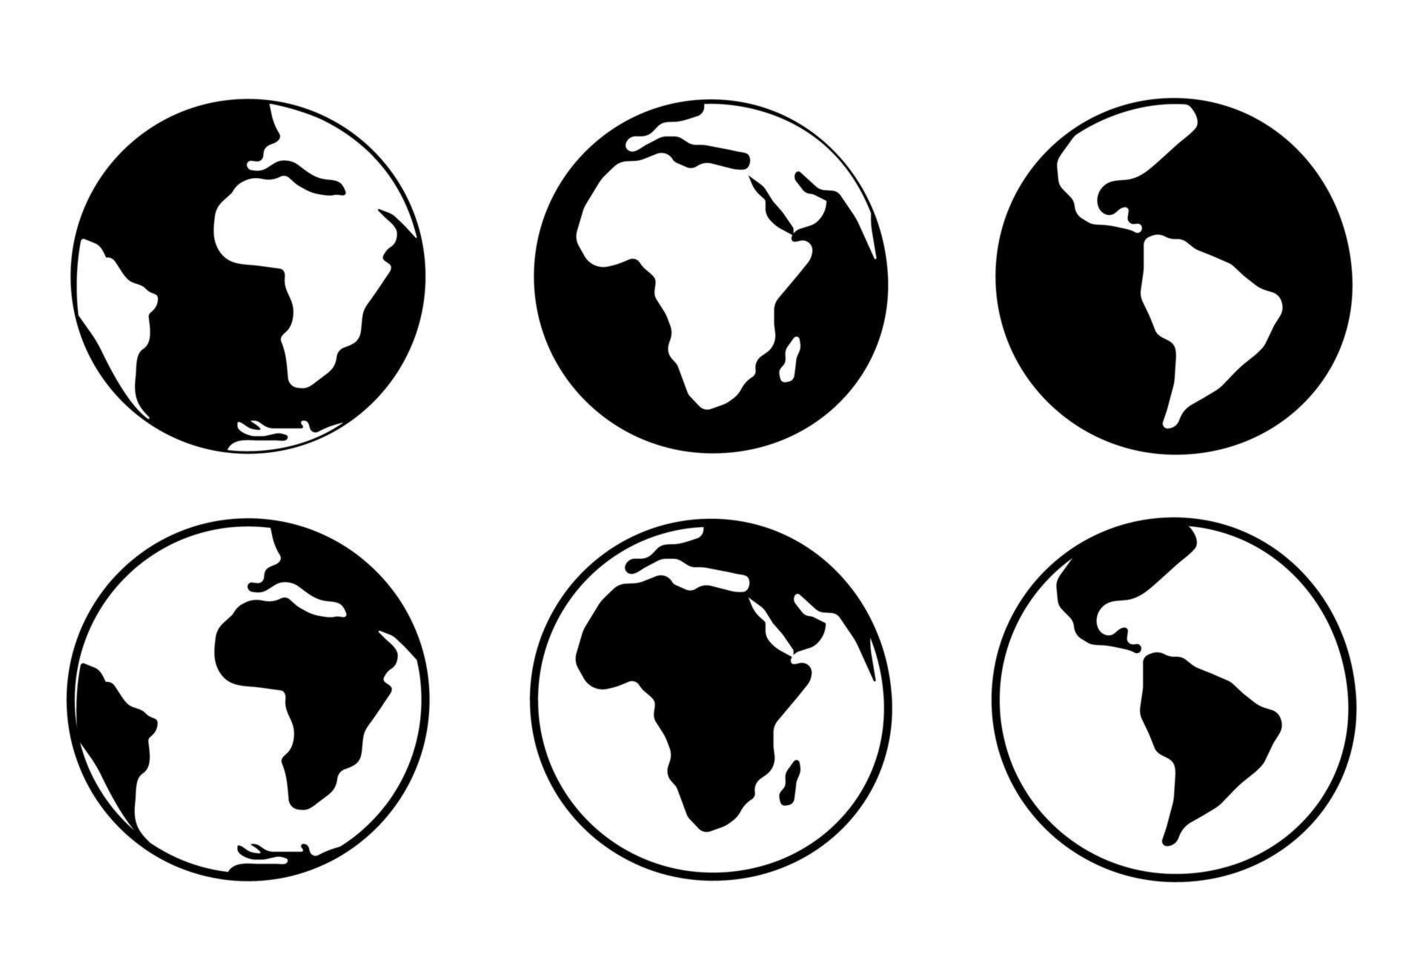 uppsättning av svarta och vita planeter jorden. isolerade ikoner, silhuetter av jorden. vektor illustration.